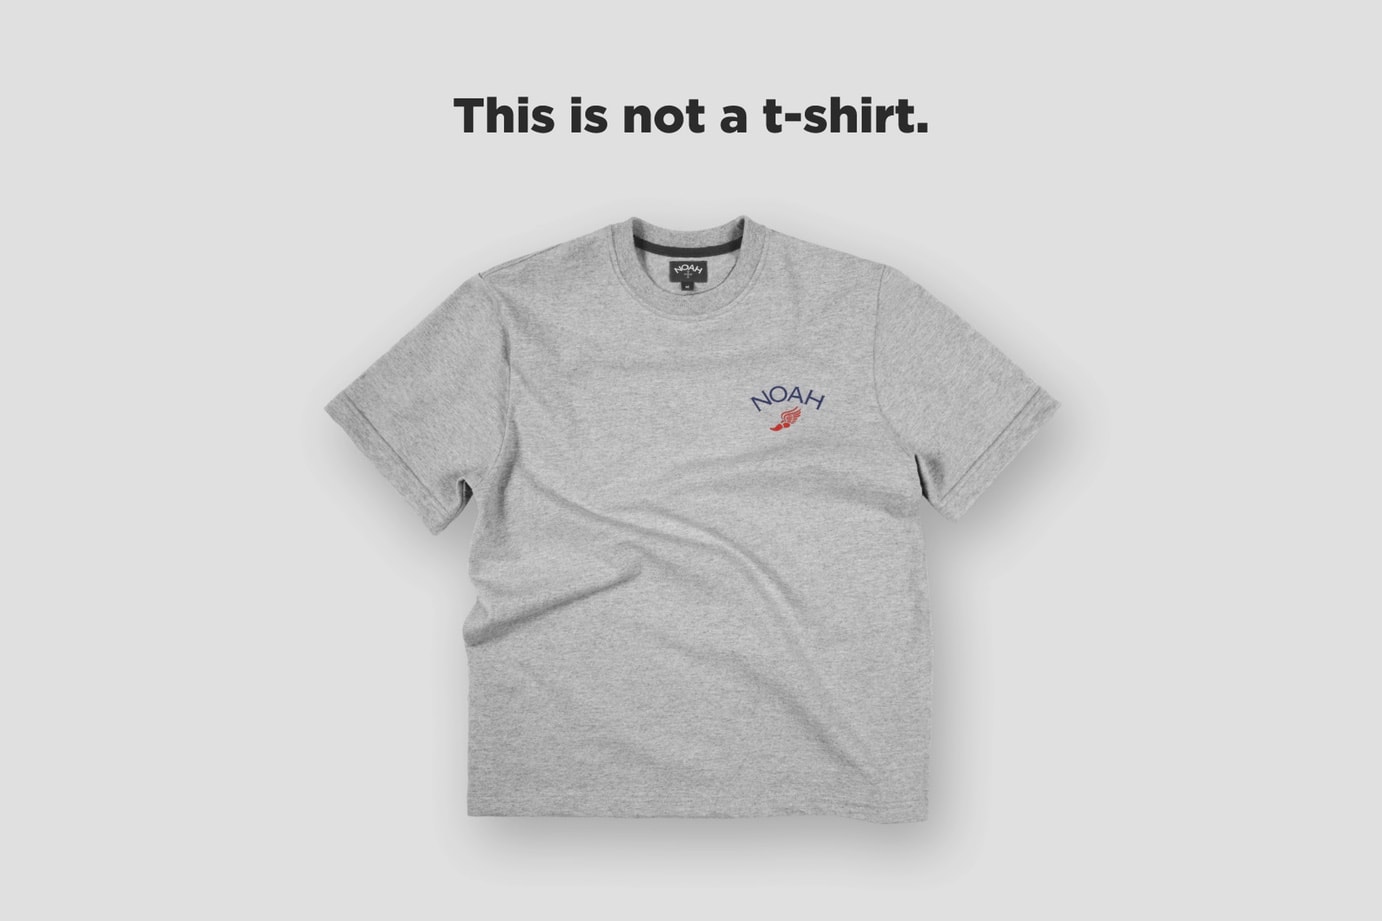 NOAH 官方解釋 T-Shirt 售價高達 $88 美元之緣由